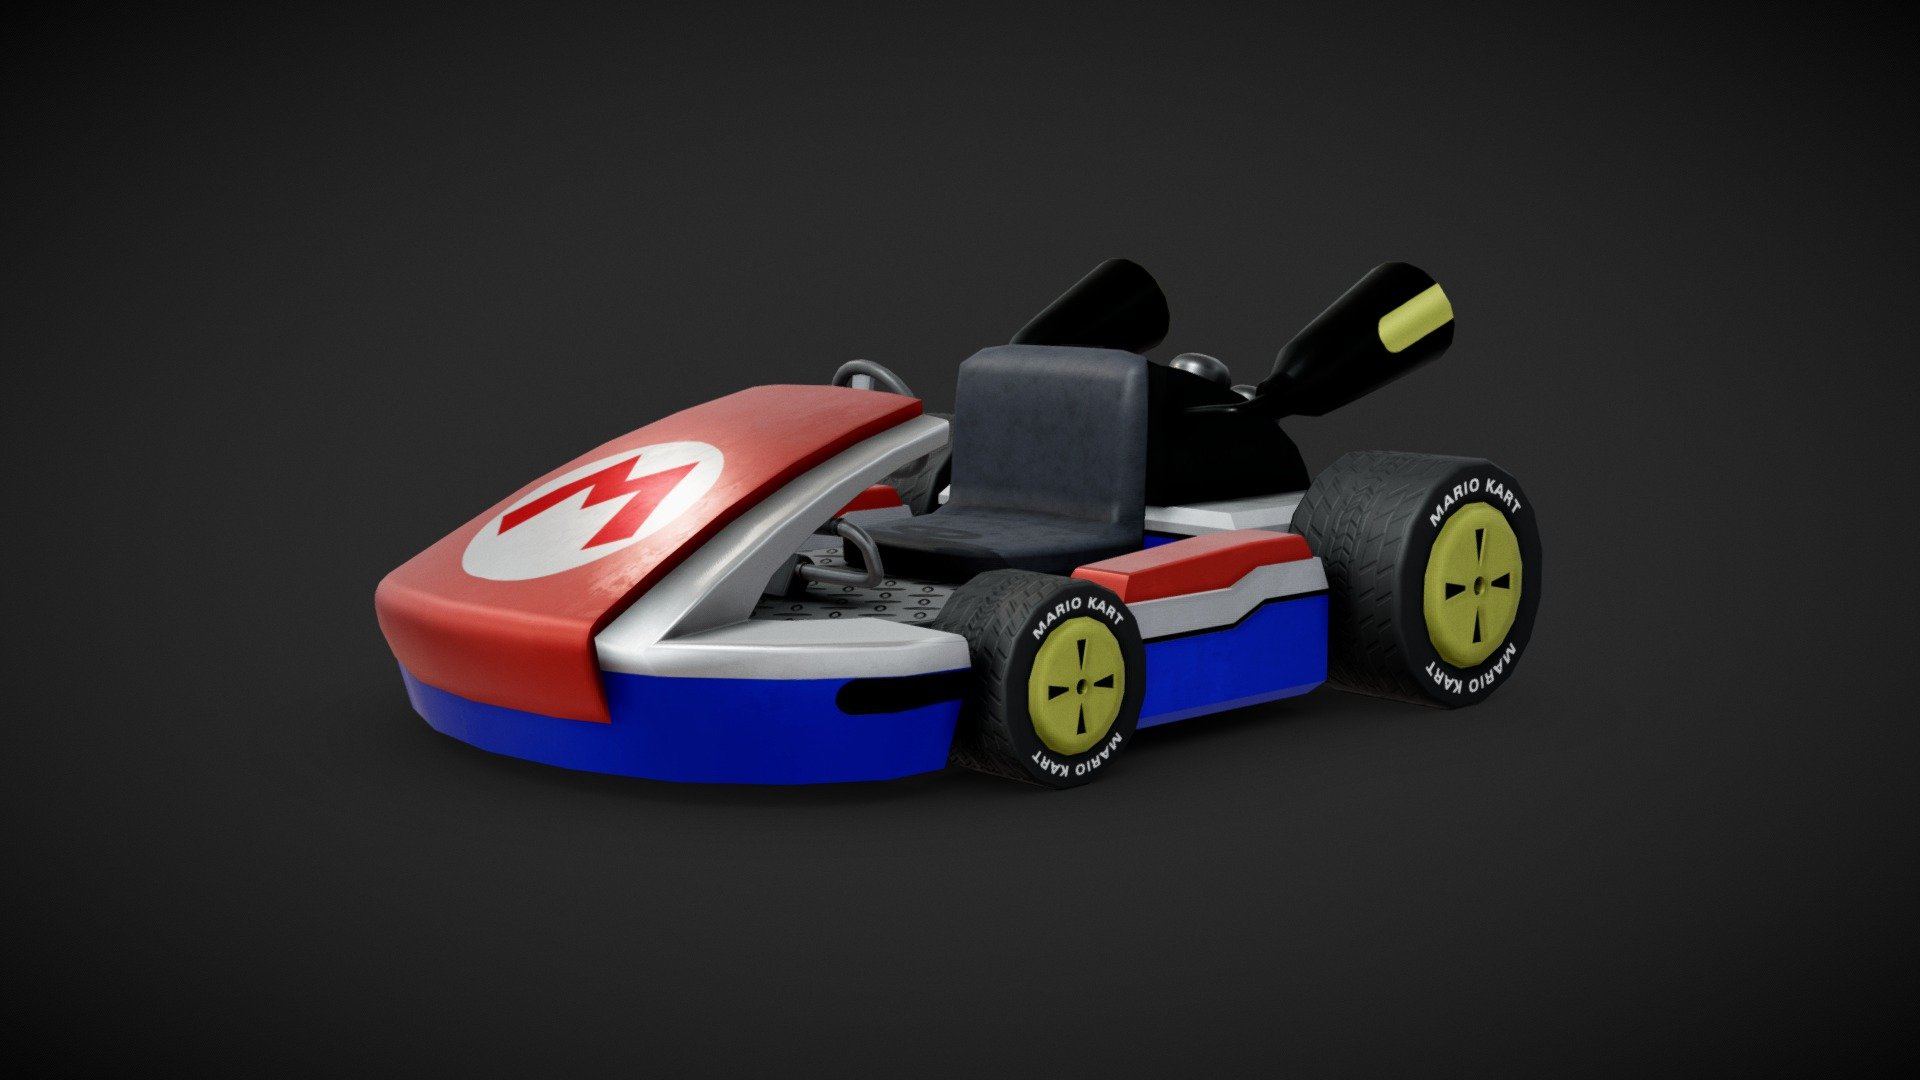 Trabalho de modelagem poligonal do Standard Kart do Mario Kart 8.

Polygonal modeling work of the Standard Kart of Mario Kart 8 3d model